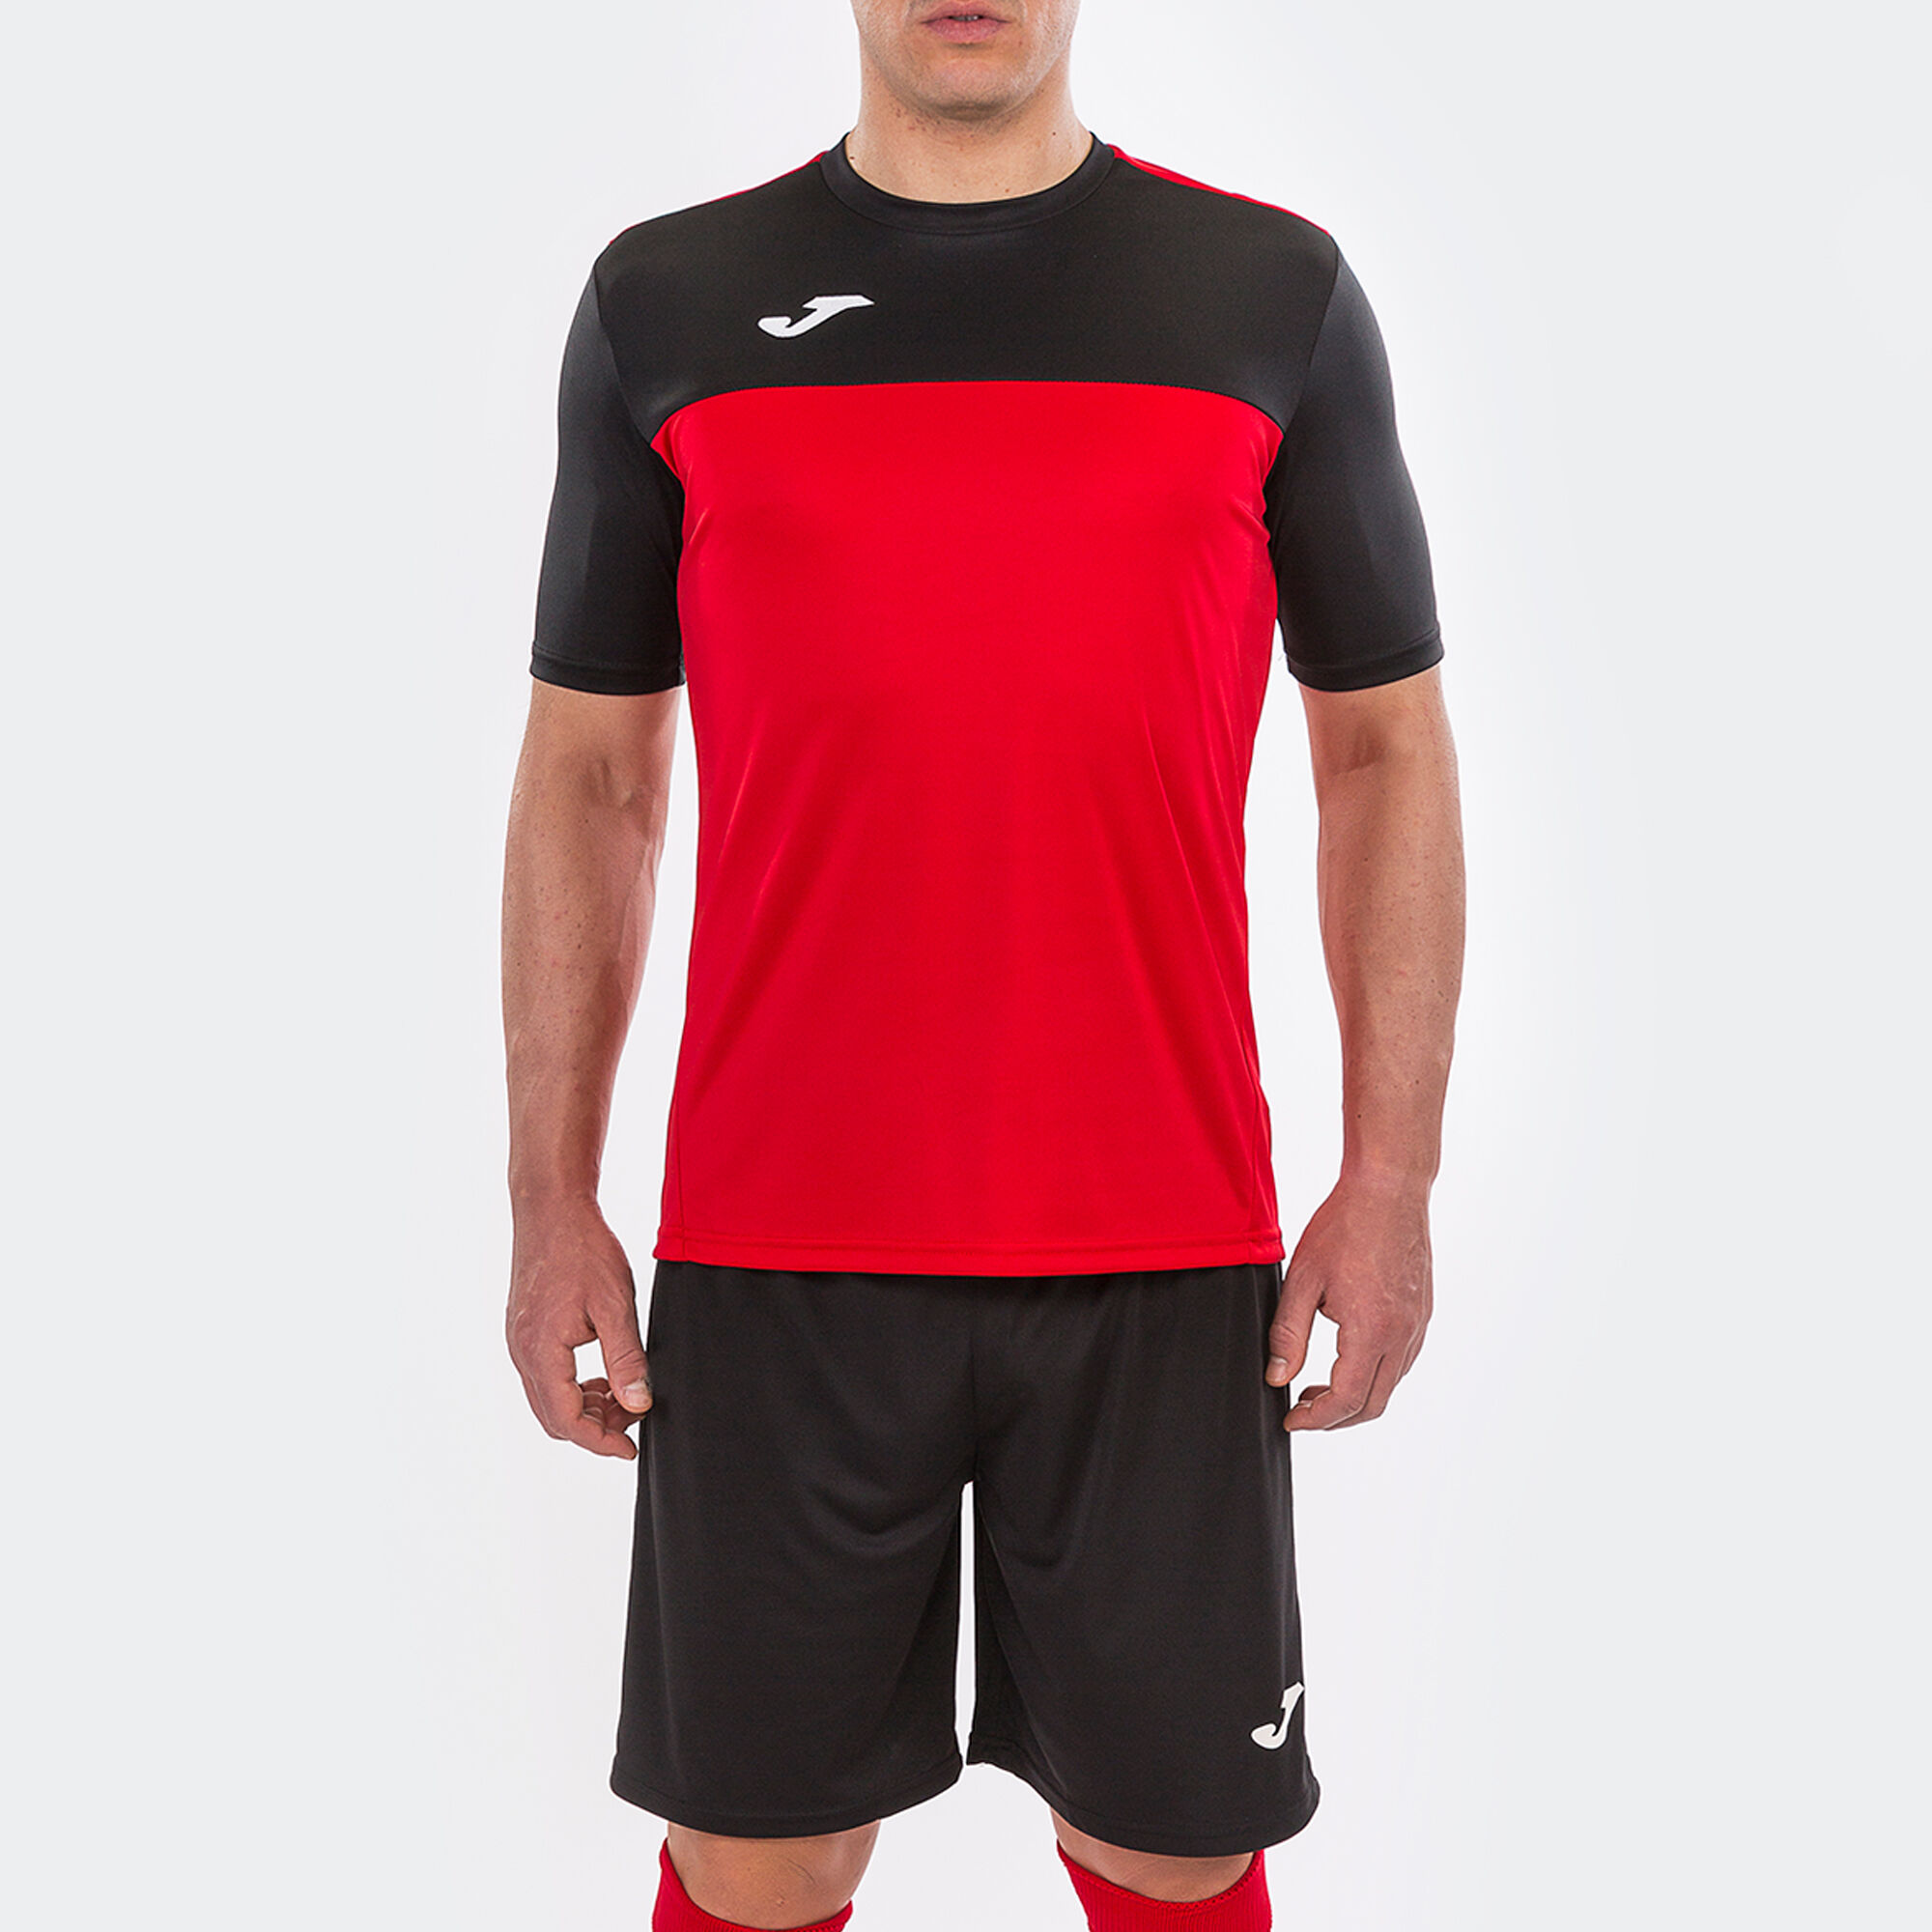 KIT DRY- Camiseta Roja + short negro